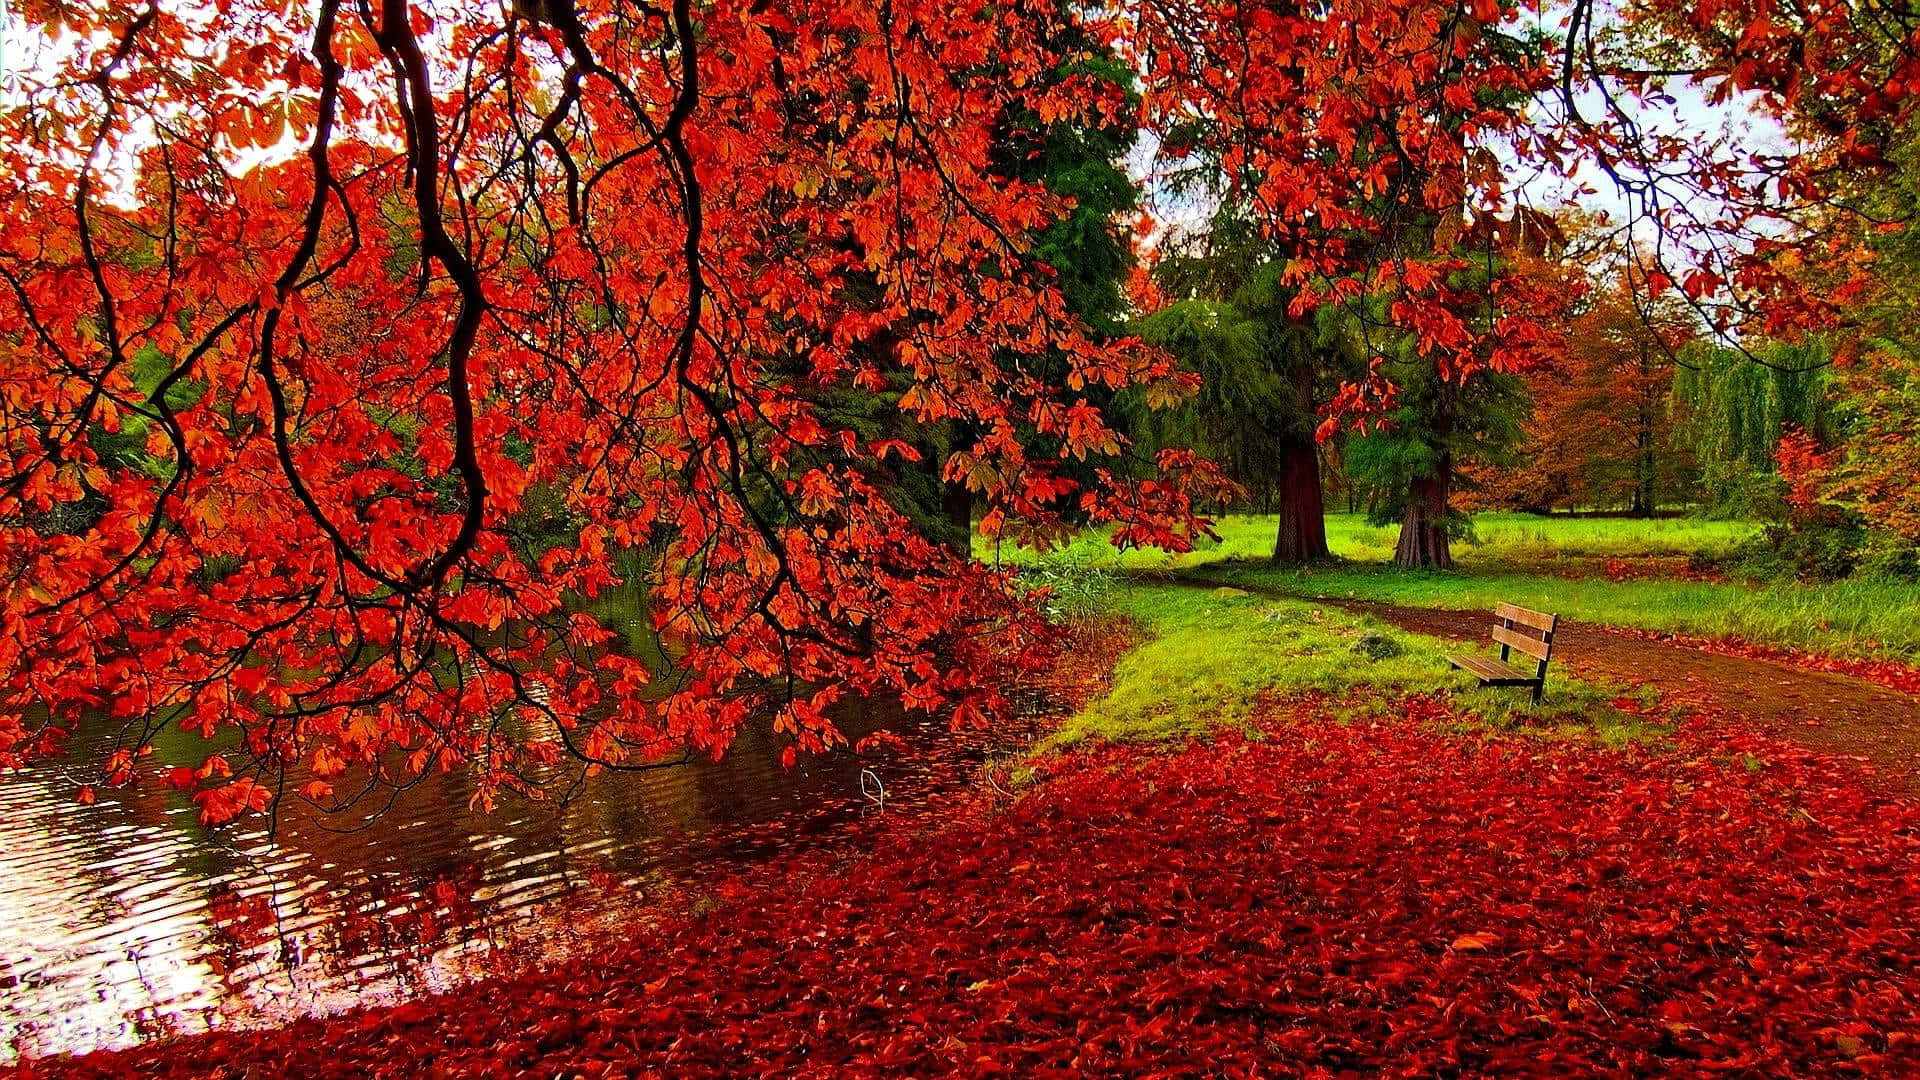 Nyd et paus i det smukke farveskær af efteråret med denne efterårs tapet. Wallpaper